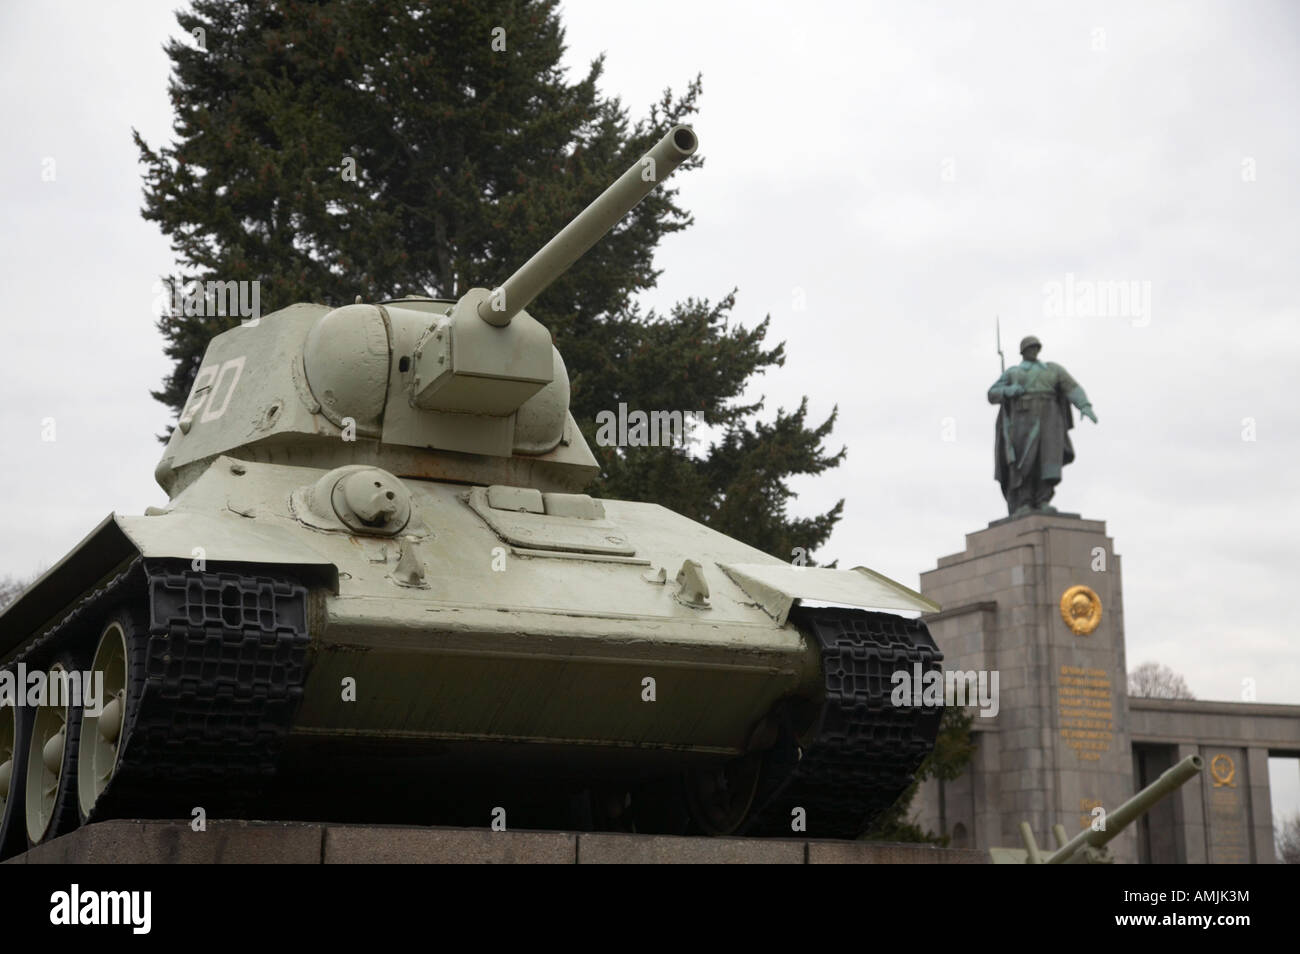 T 34 tank au monument commémoratif de guerre soviétique Tiergarten Berlin Allemagne Banque D'Images